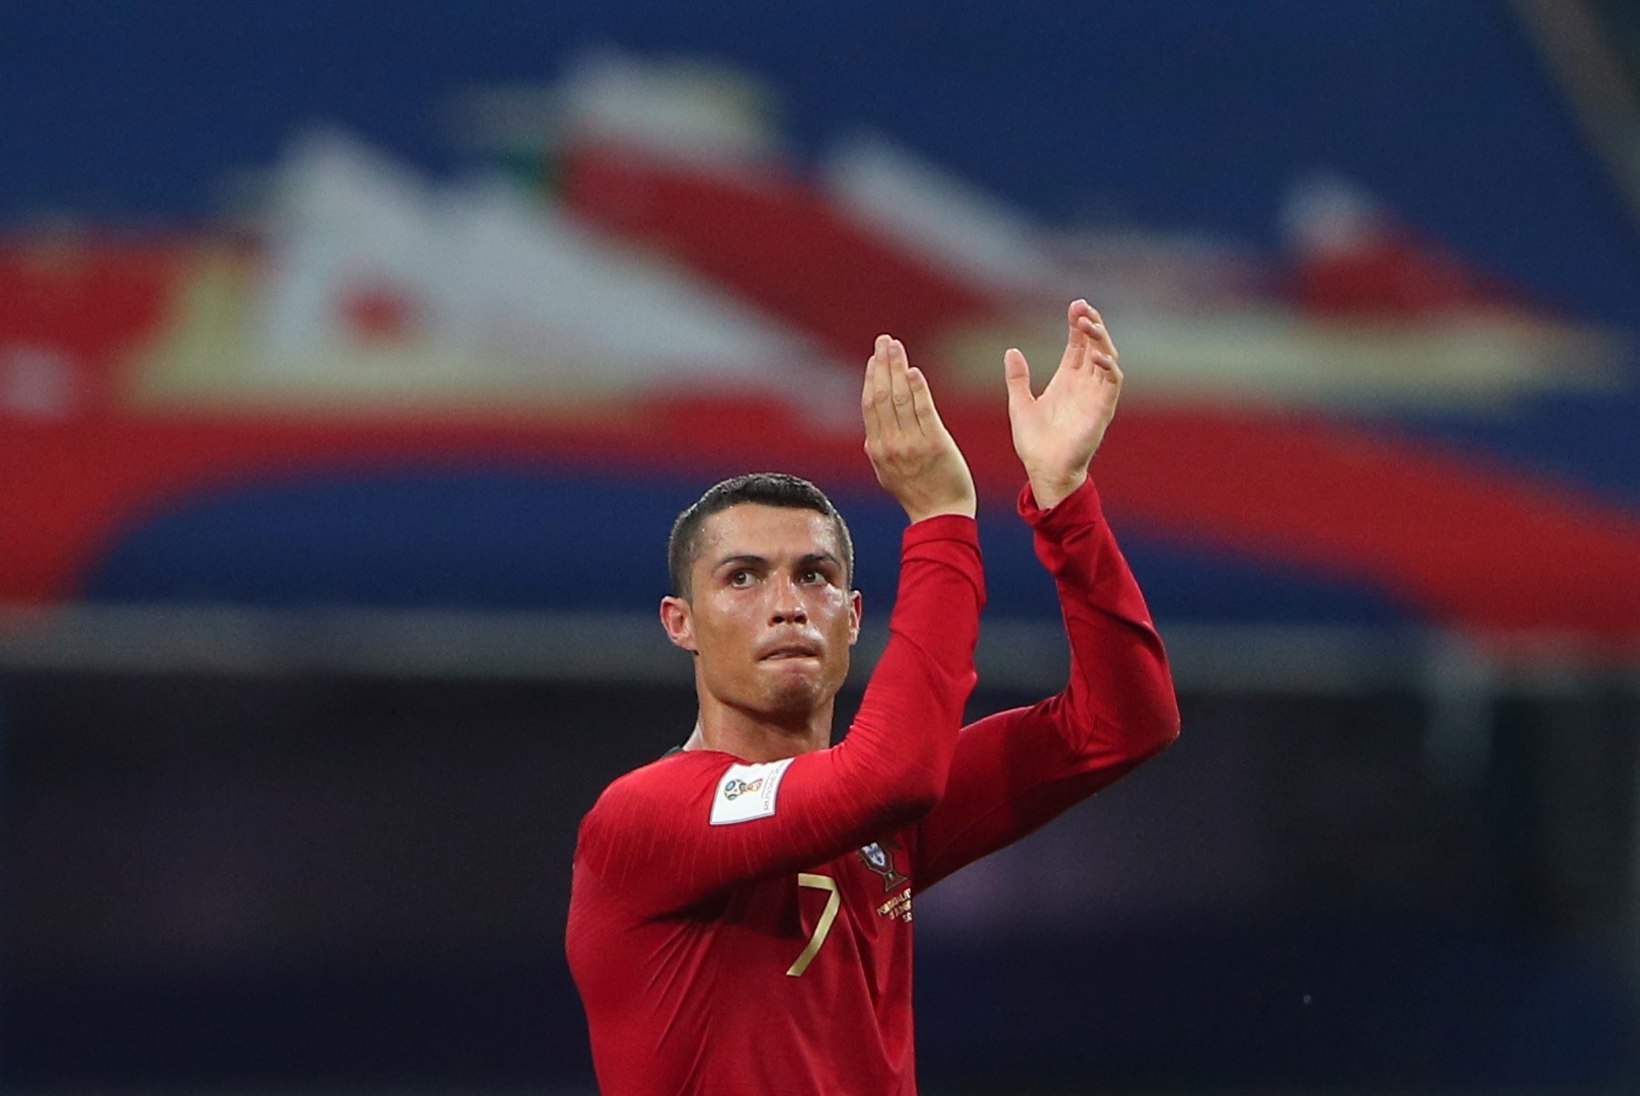 VANIM, PARIM, SUURIM!? Cristiano Ronaldo täiendas ajalooraamatuid uute ja vägevate numbritega